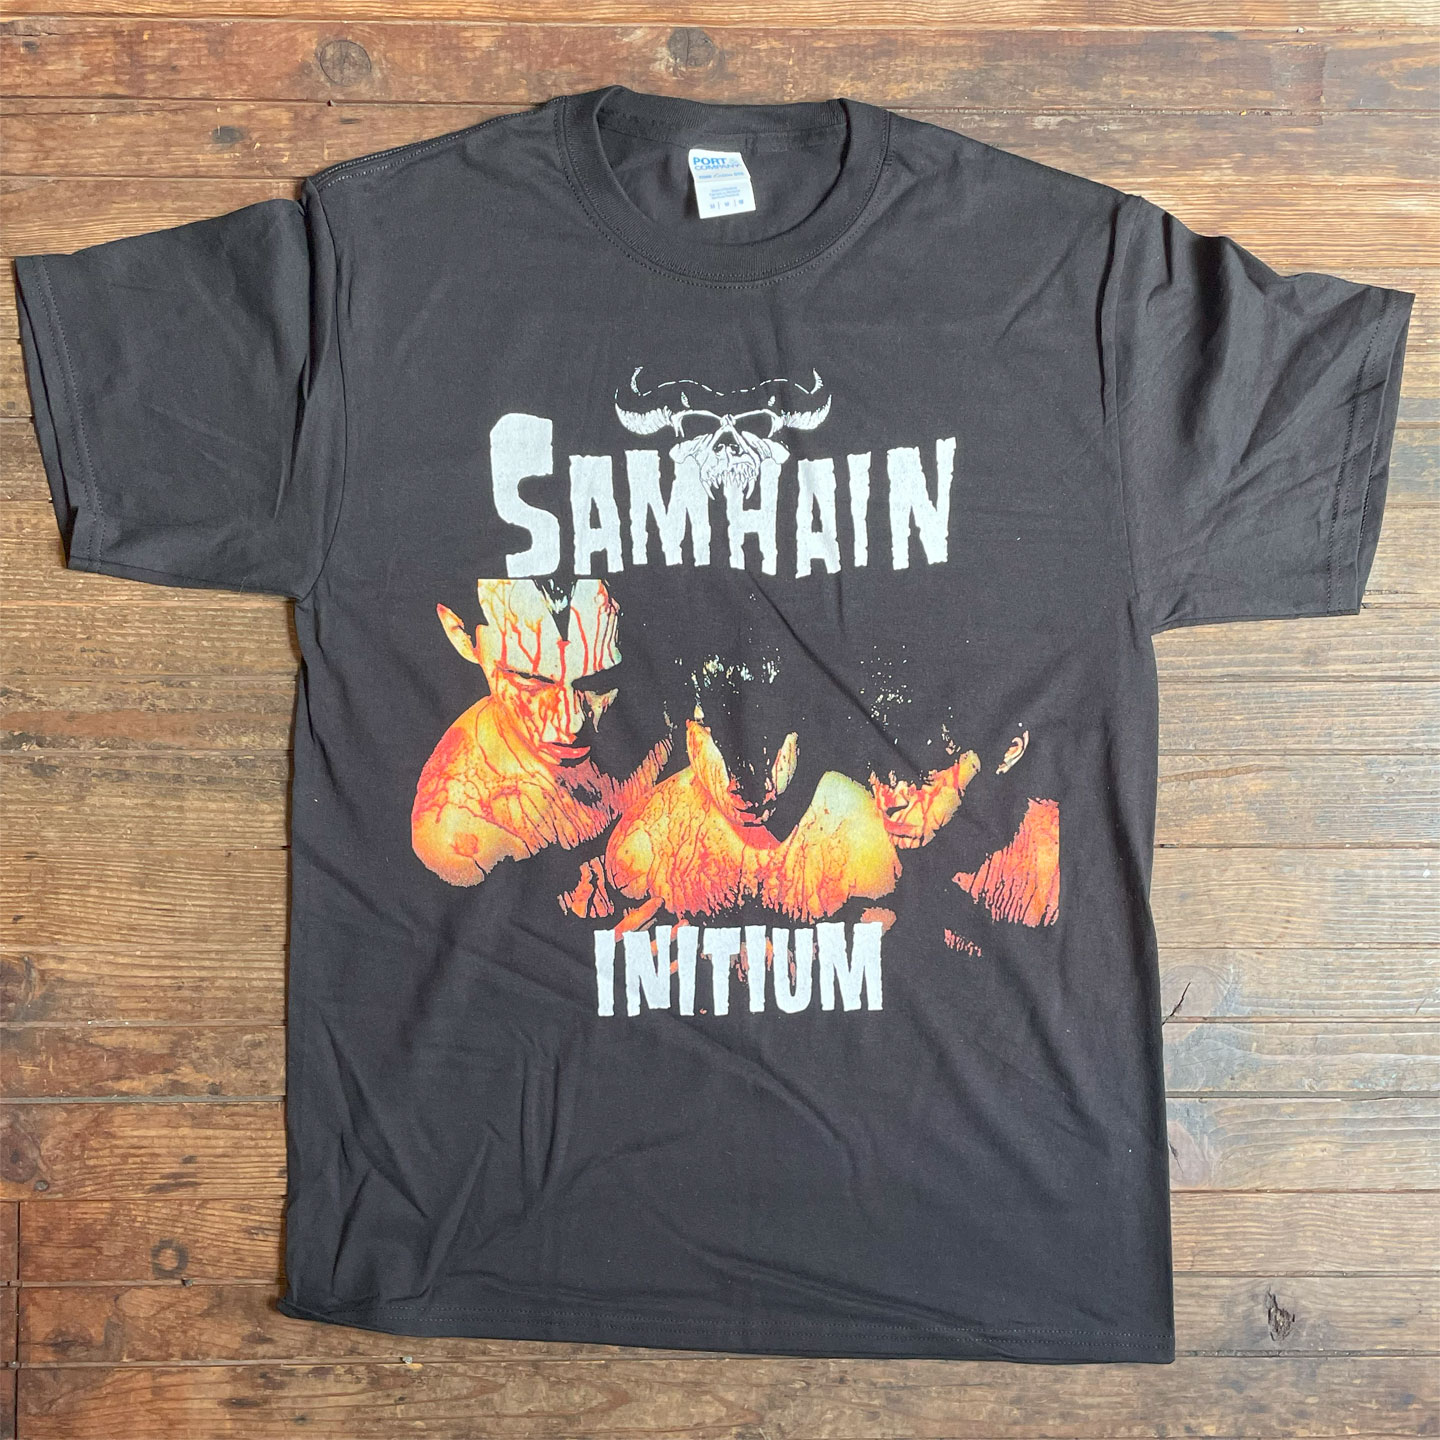 SAMHAIN Tシャツ INITIUM